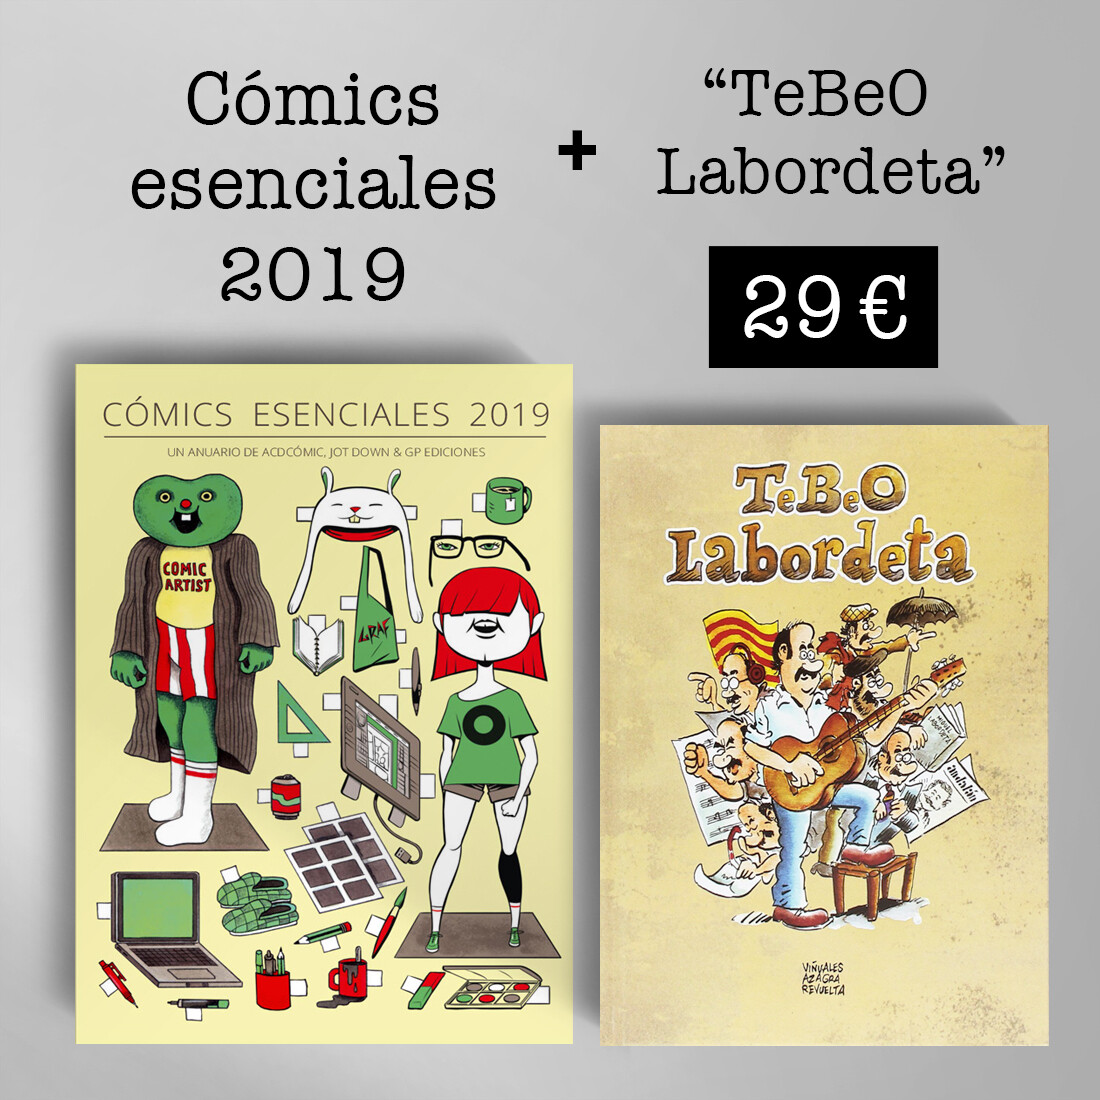 Cómics Esenciales 2019 + TeBeO Labordeta